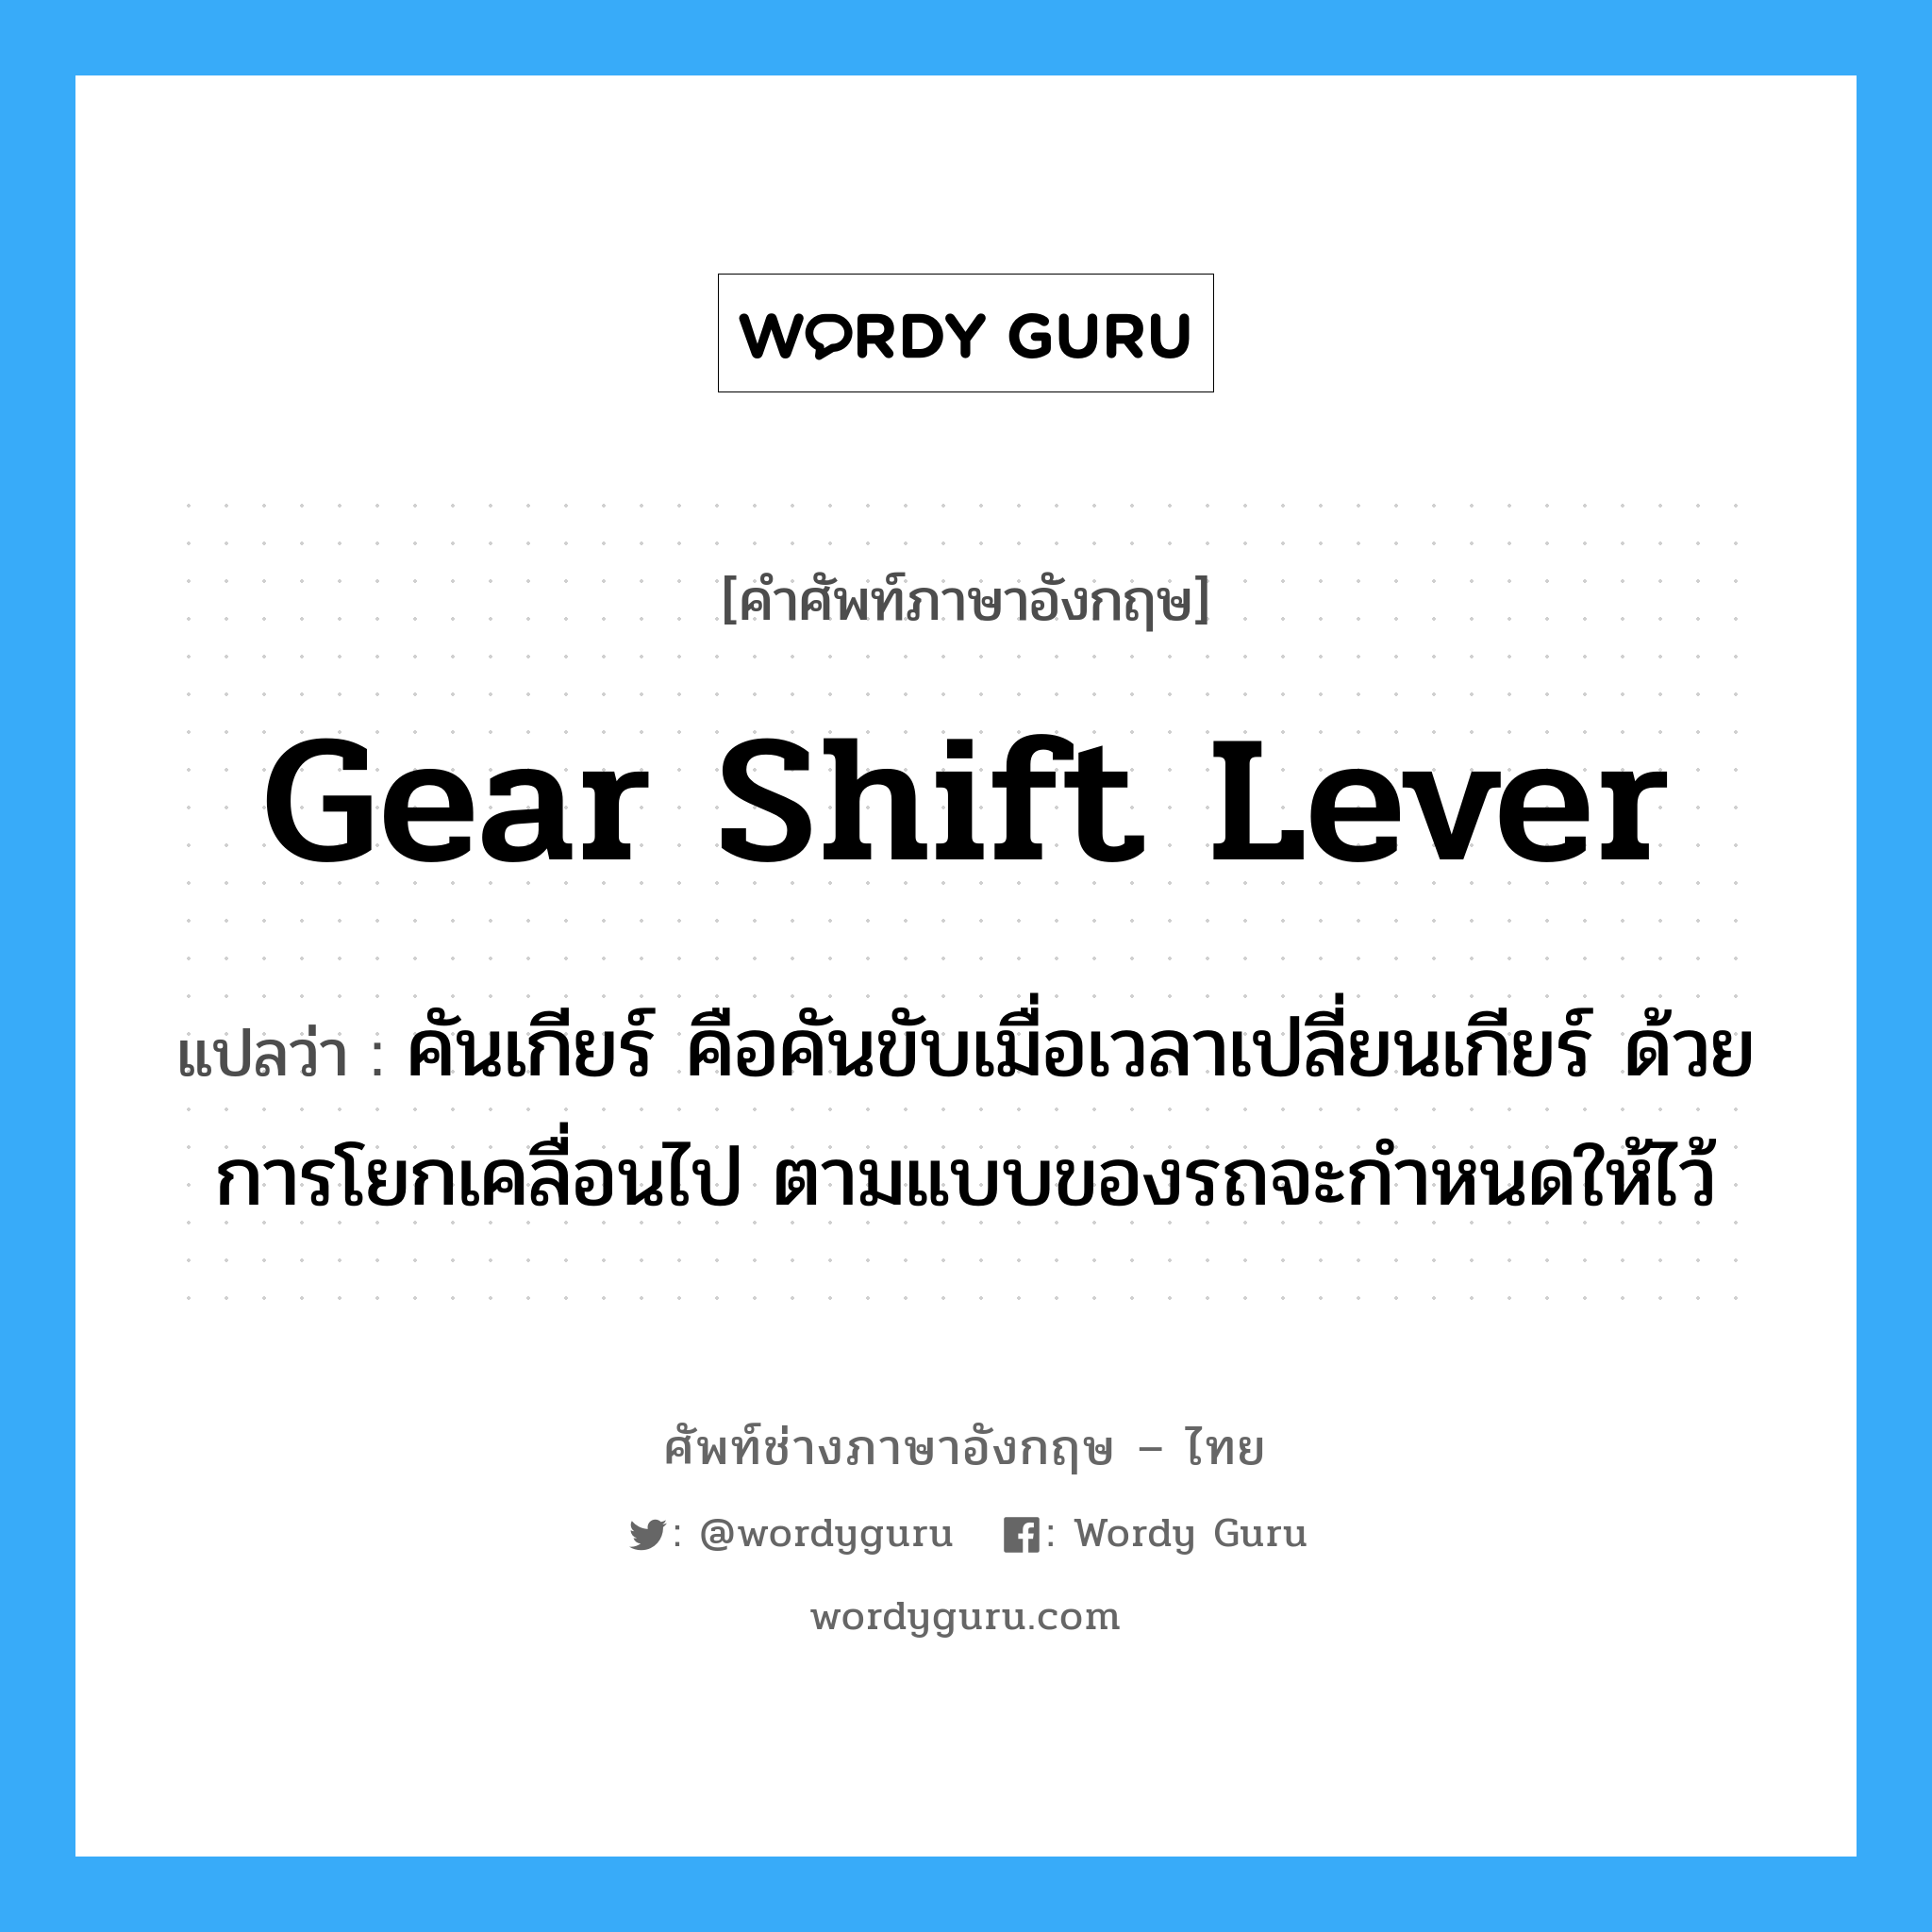 gear shift lever แปลว่า?, คำศัพท์ช่างภาษาอังกฤษ - ไทย gear shift lever คำศัพท์ภาษาอังกฤษ gear shift lever แปลว่า คันเกียร์ คือคันขับเมื่อเวลาเปลี่ยนเกียร์ ด้วยการโยกเคลื่อนไป ตามแบบของรถจะกำหนดให้ไว้